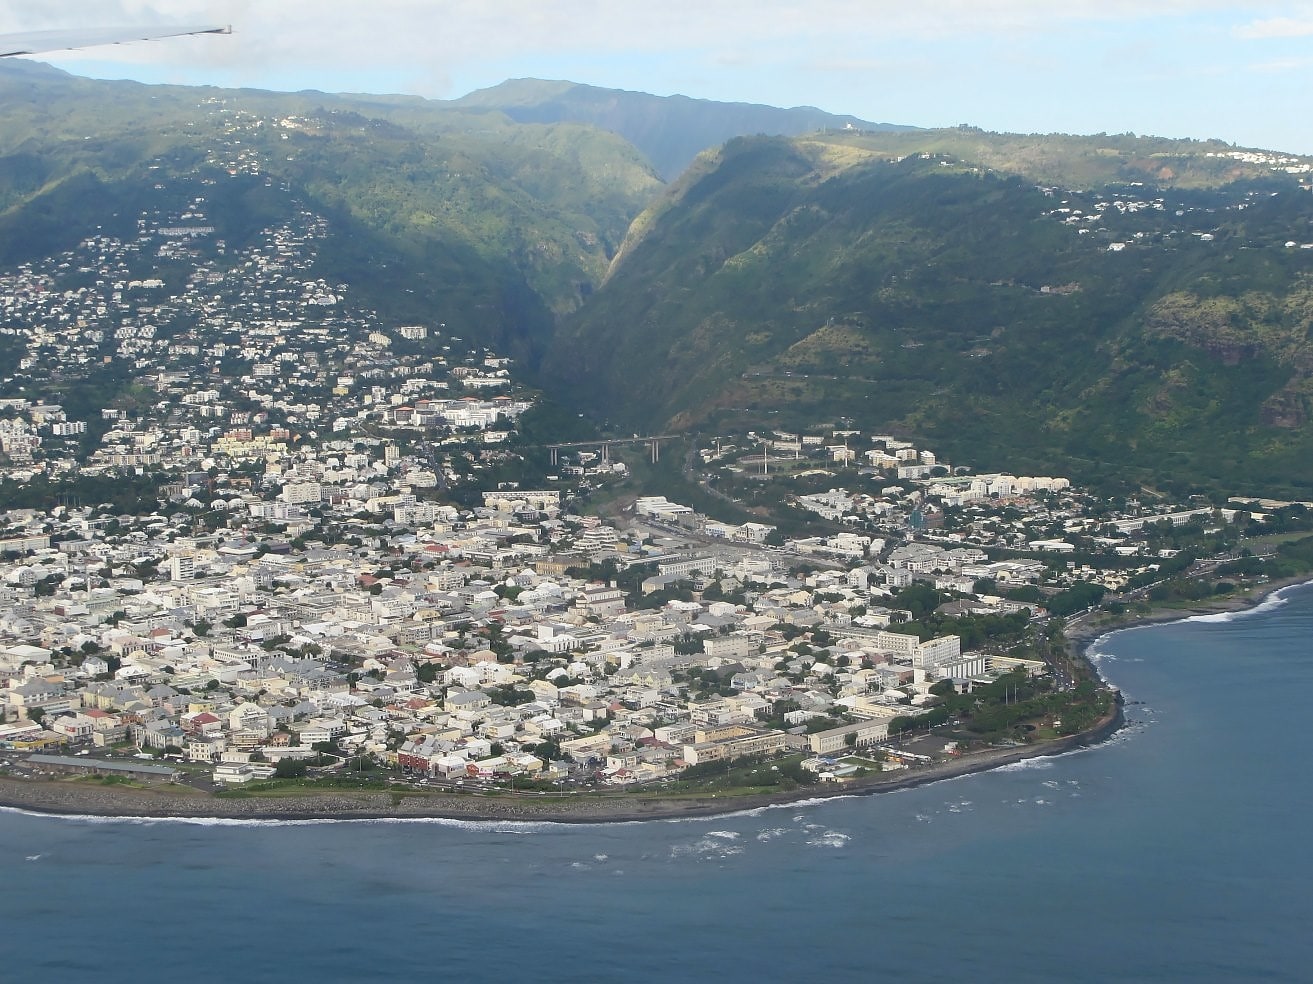 Saint-Denis, La Réunion